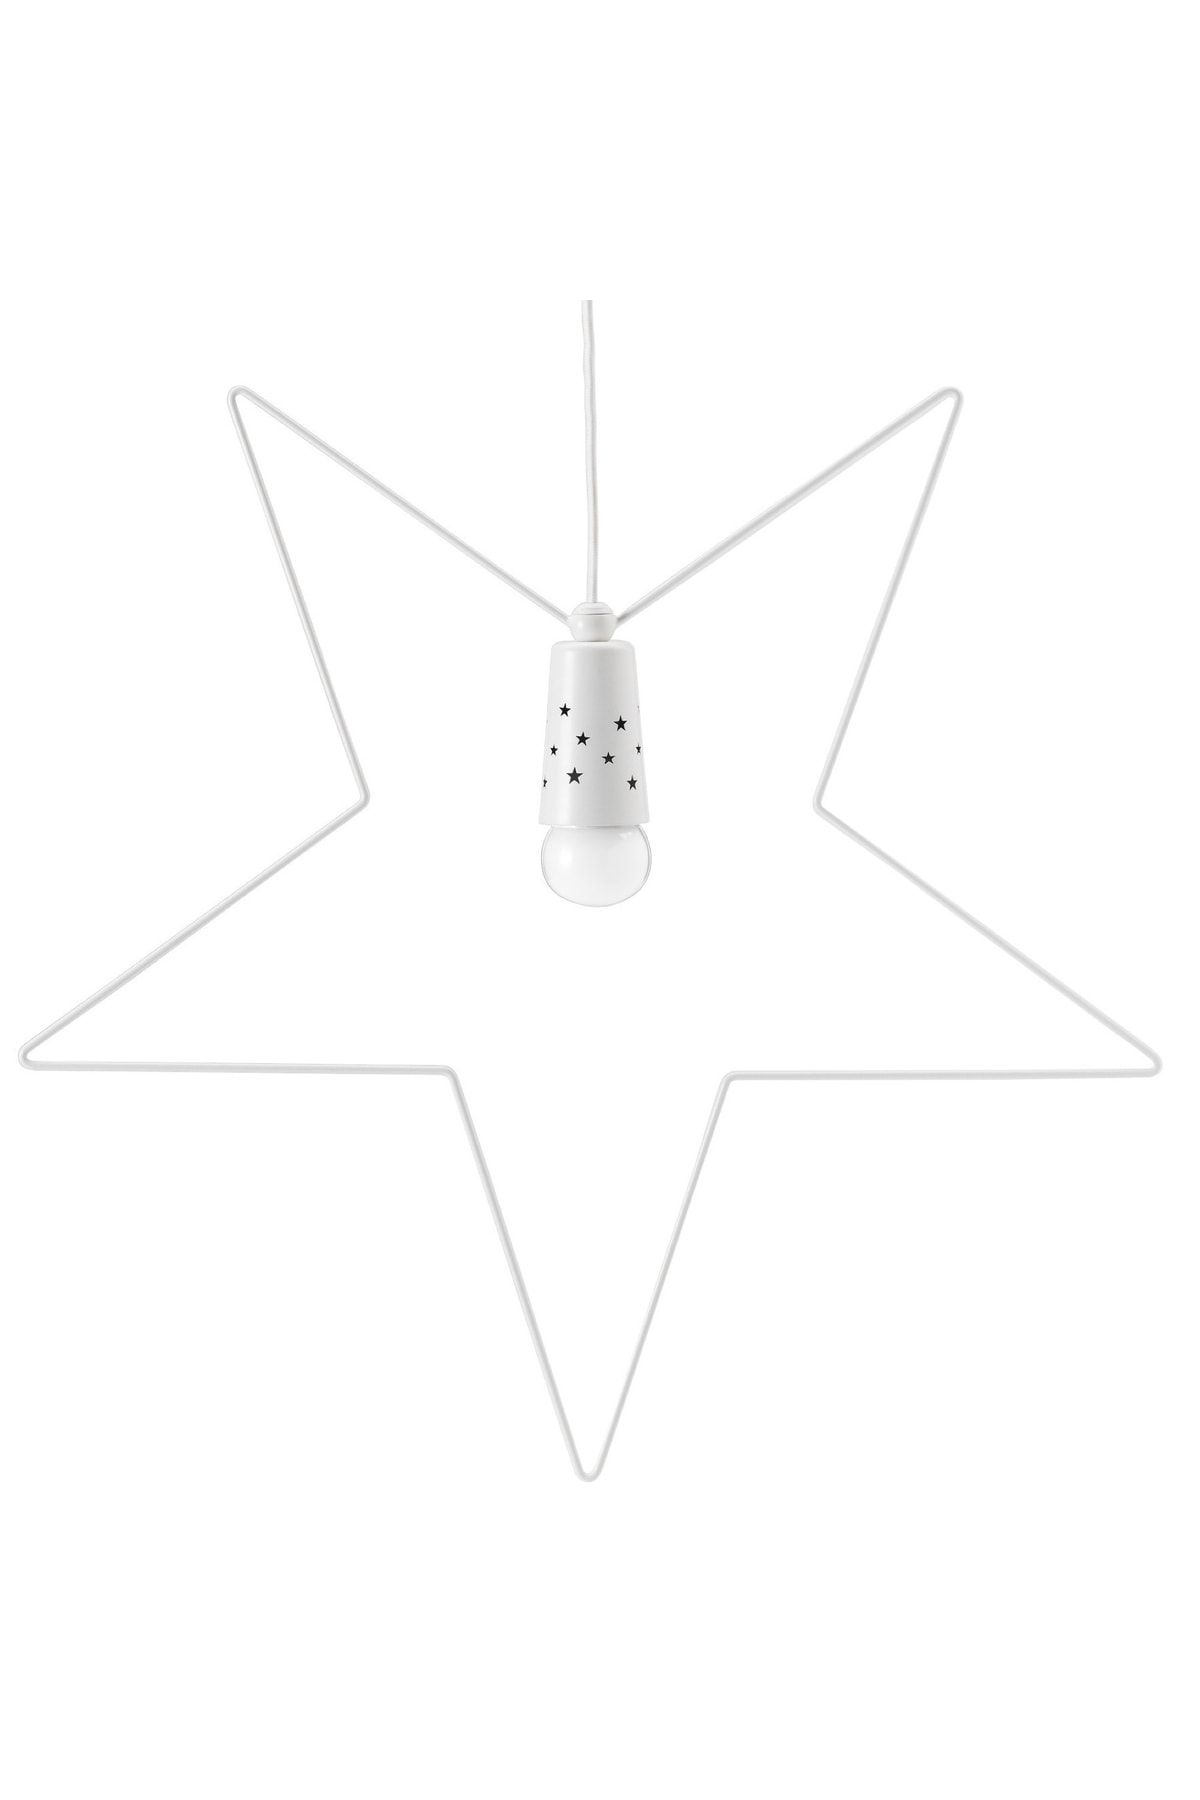 IKEA Strala 55 Cm Çelik Yıldız Beyaz Tavan Lambası Sarkıt Lamba 3 Metre Kablo Dahildir